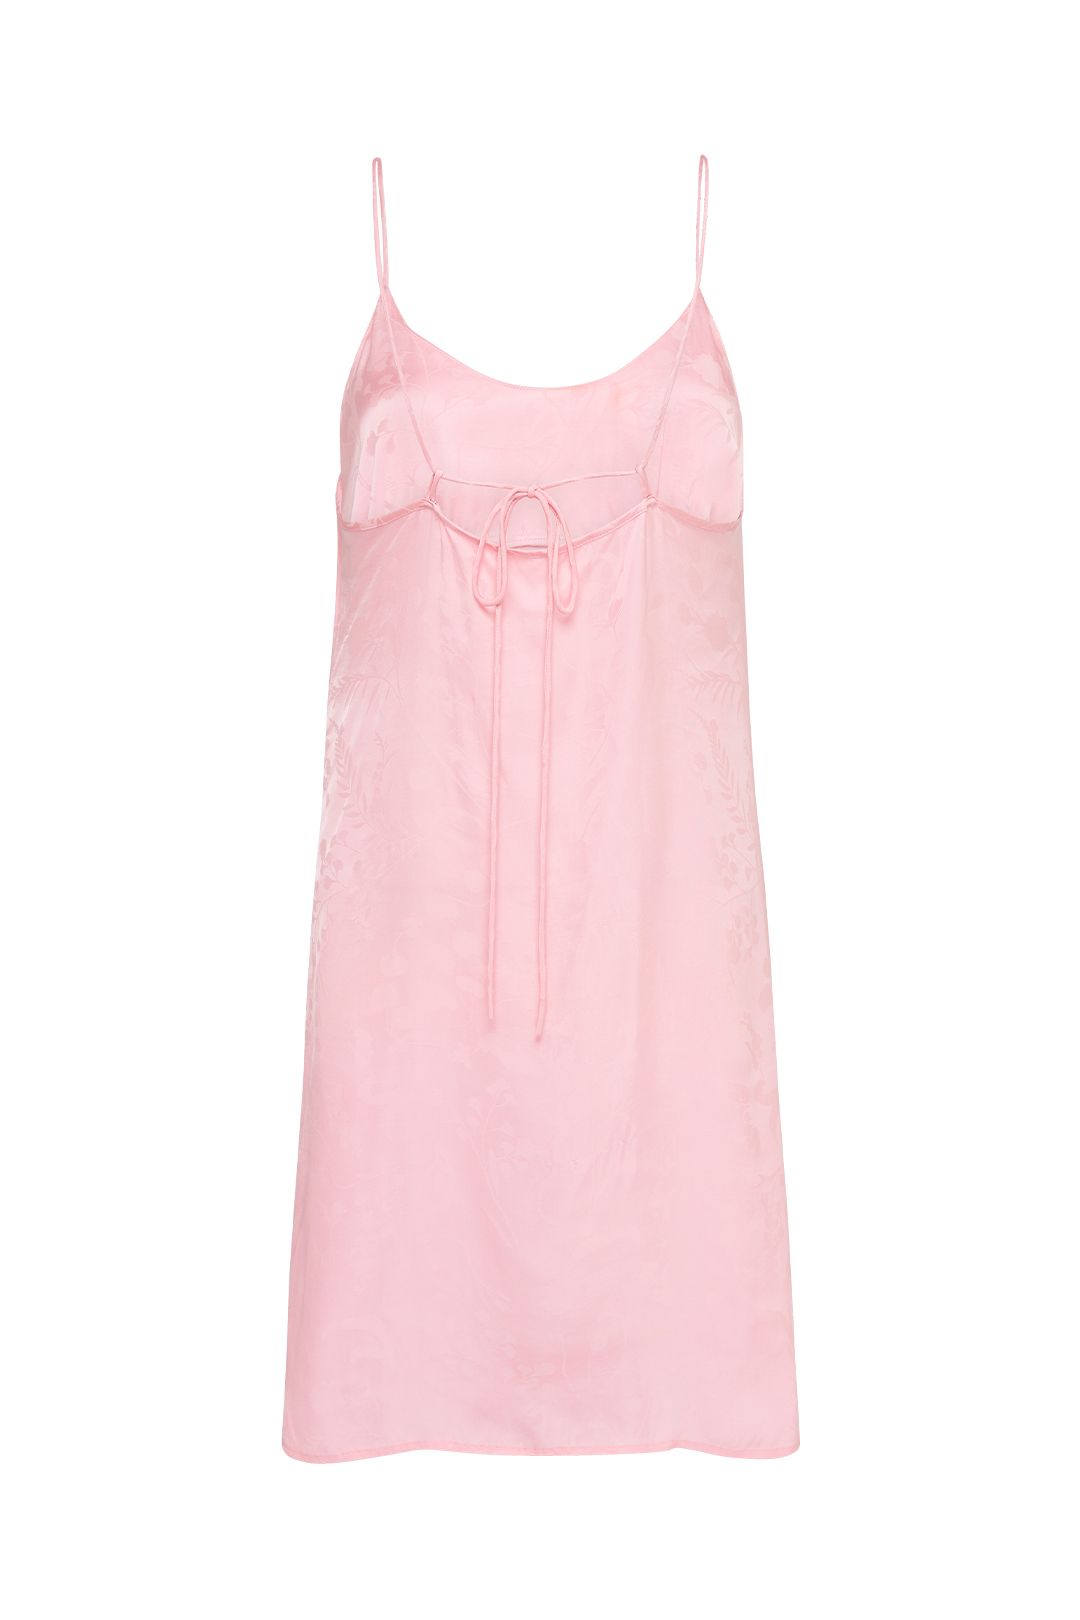 Spell Verona Mini Slip Dress 90s Pink Bias Cut